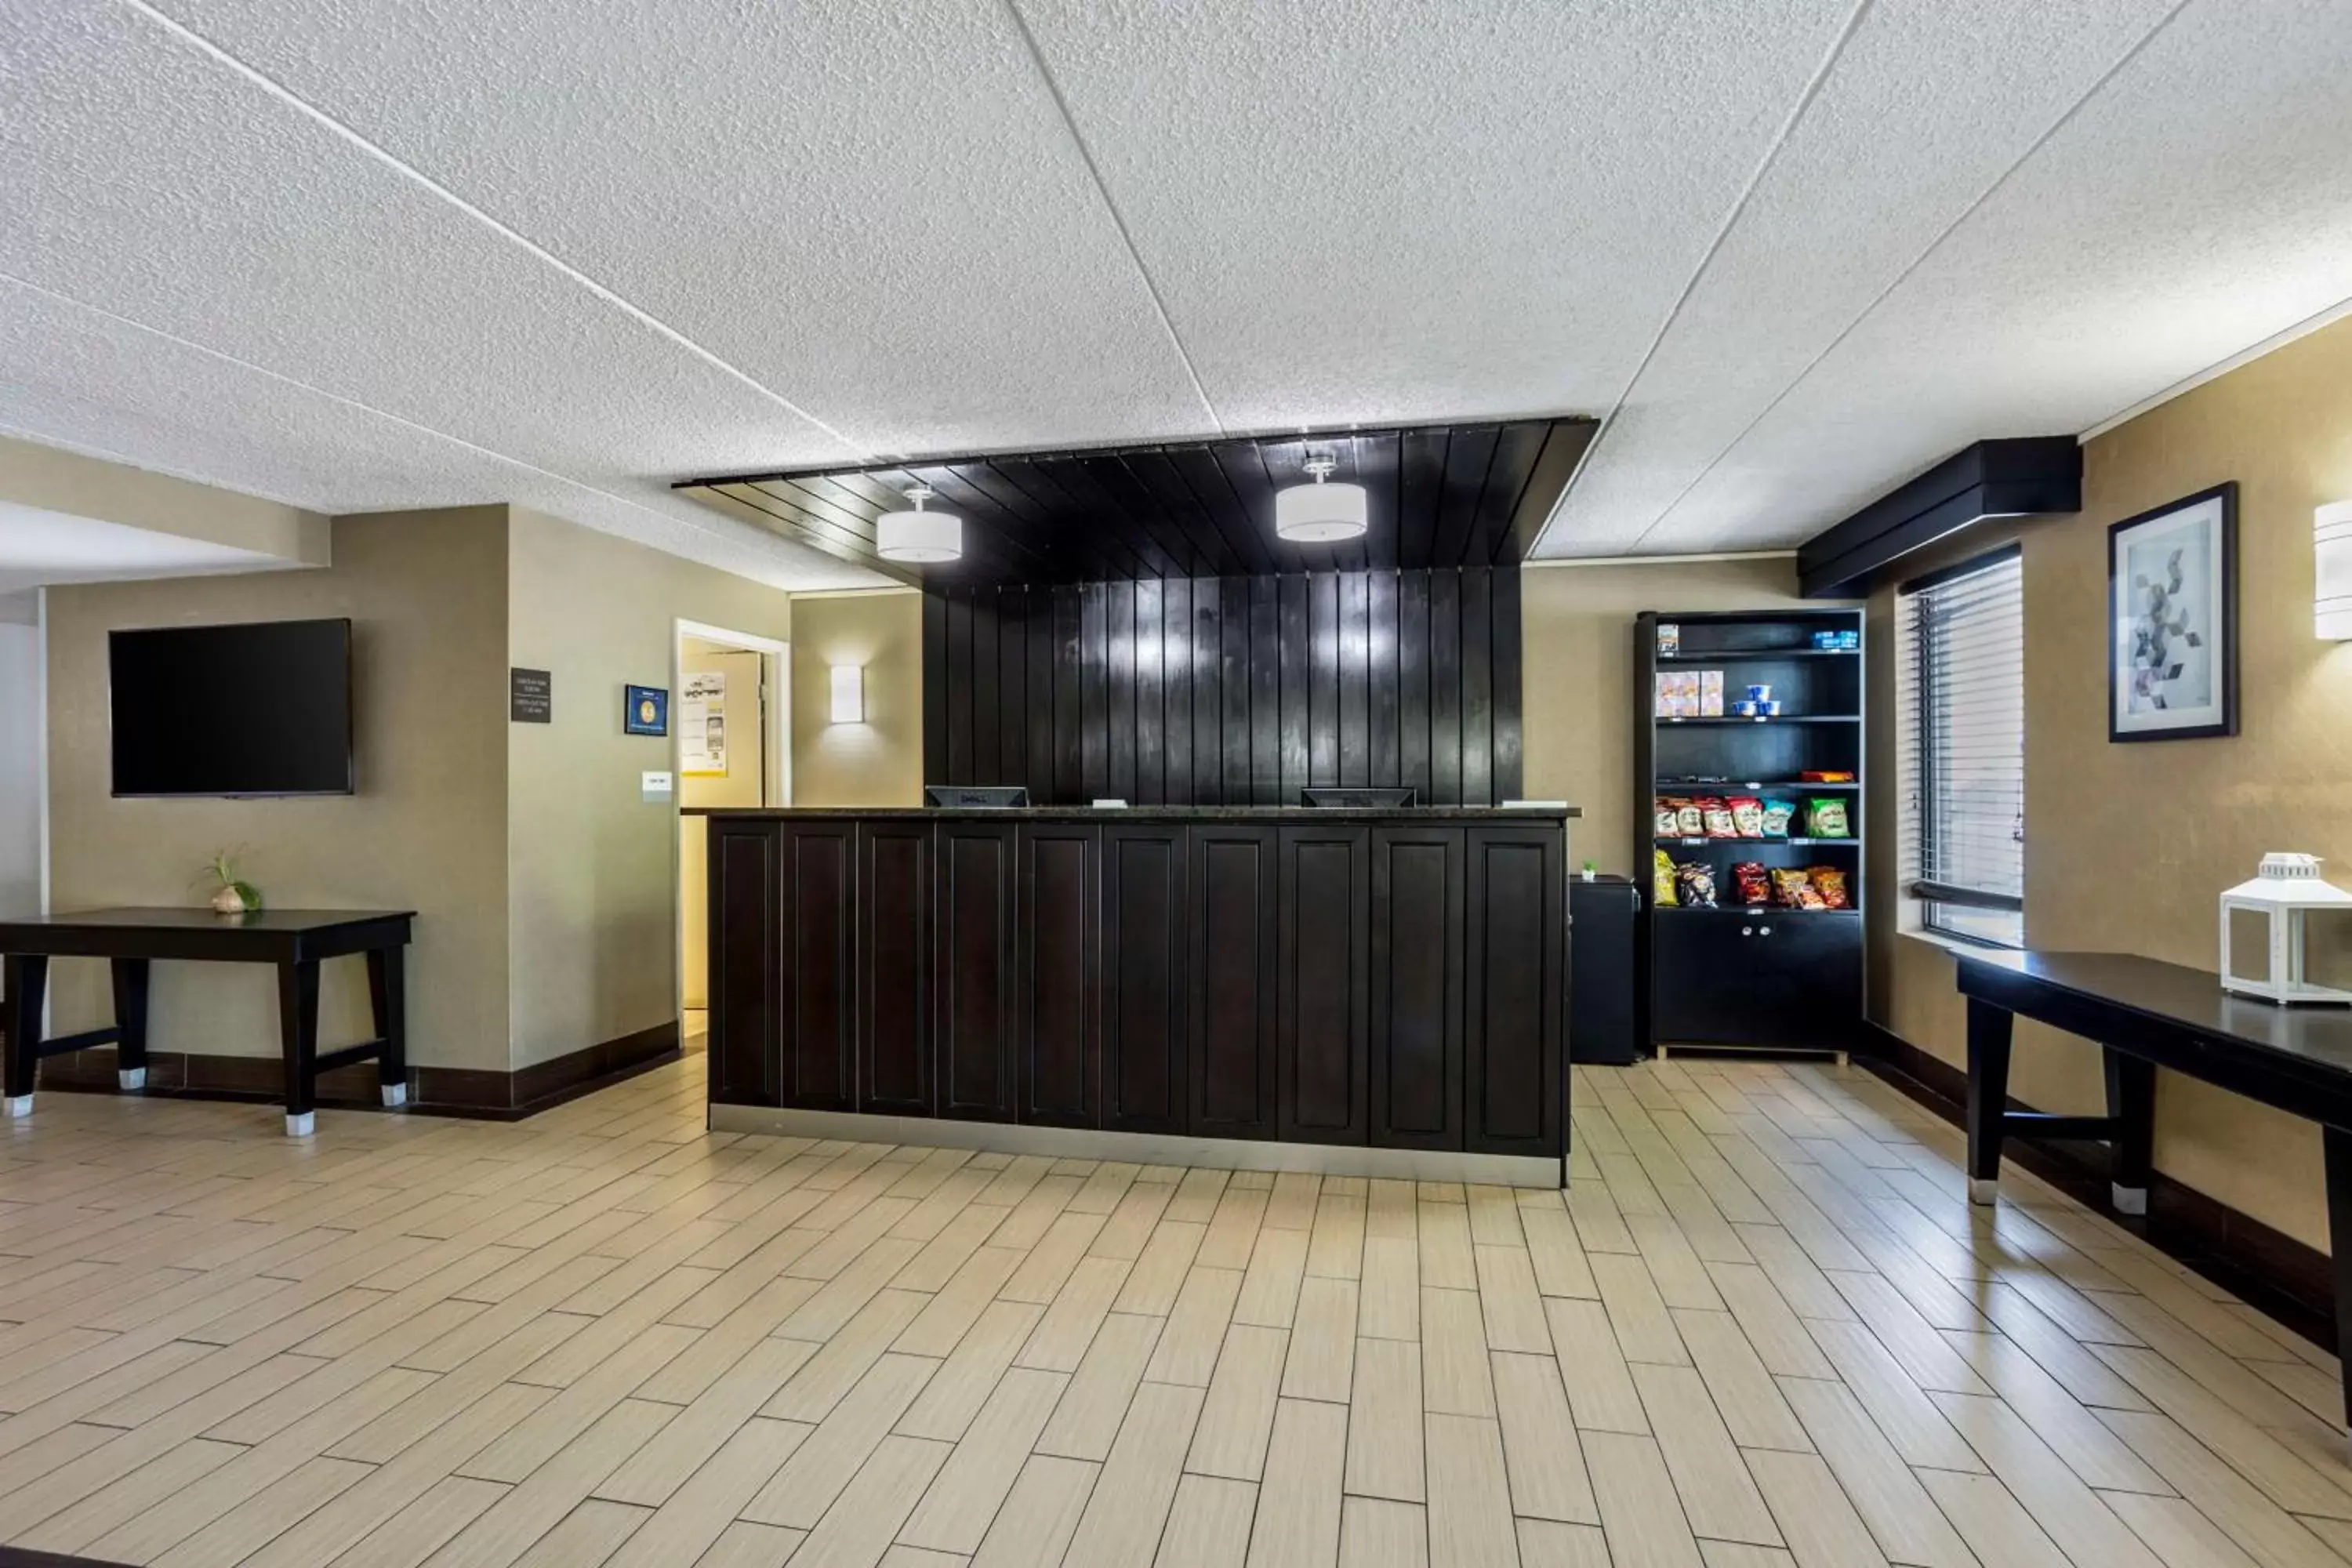 Lobby or reception, Lobby/Reception in Best Western Harrisburg North Hotel